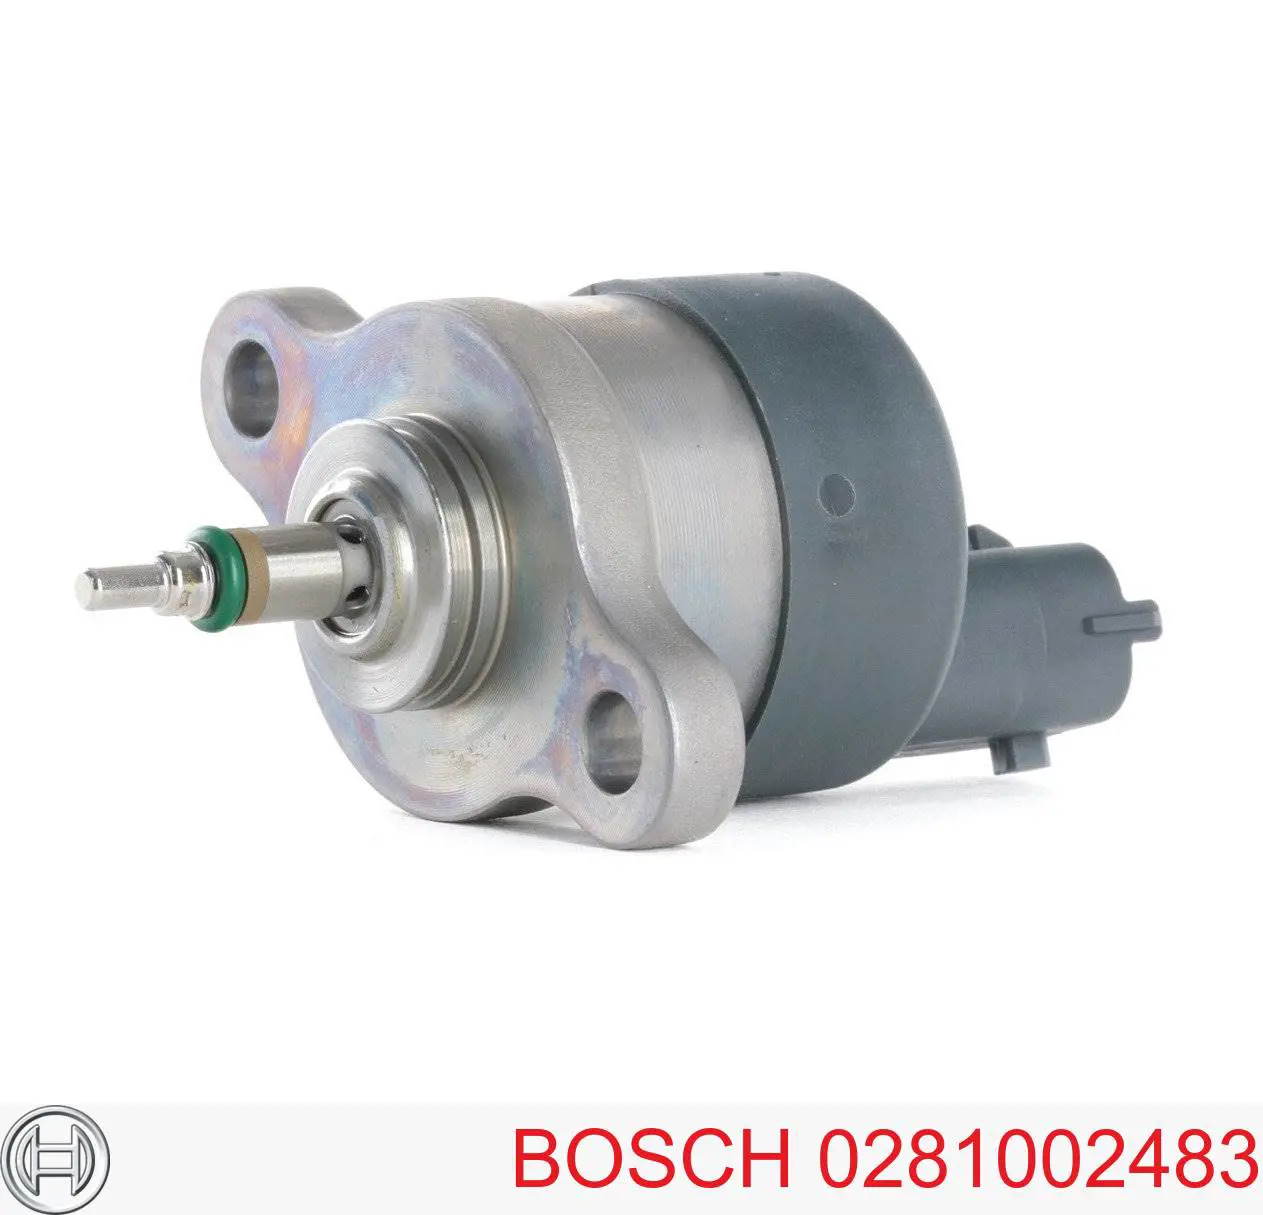 Клапан регулировки давления (редукционный клапан ТНВД) Common-Rail-System Bosch 0281002483